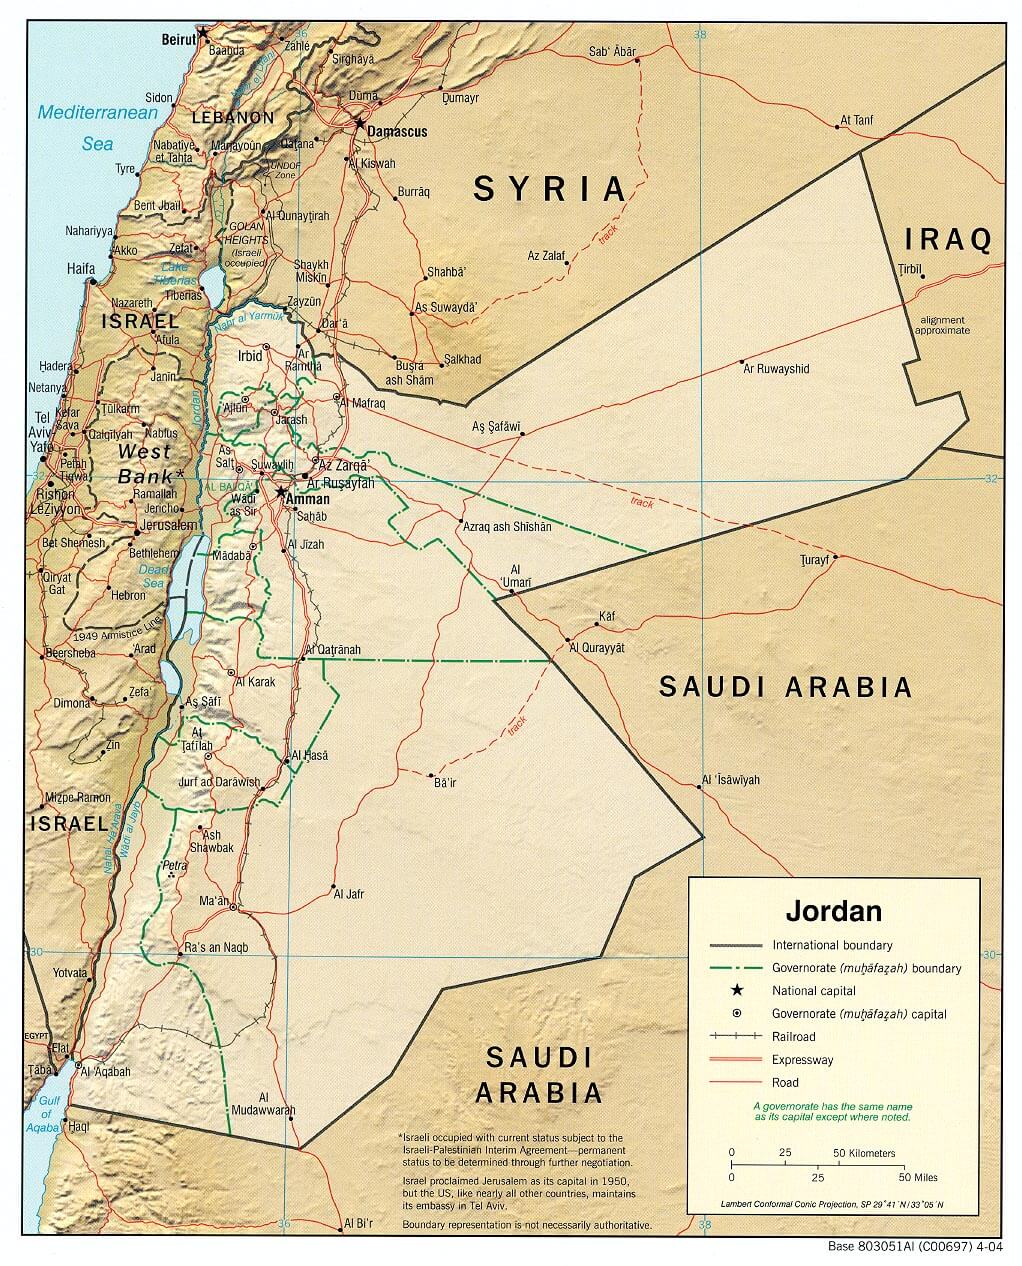 jordanienien körperlich karte